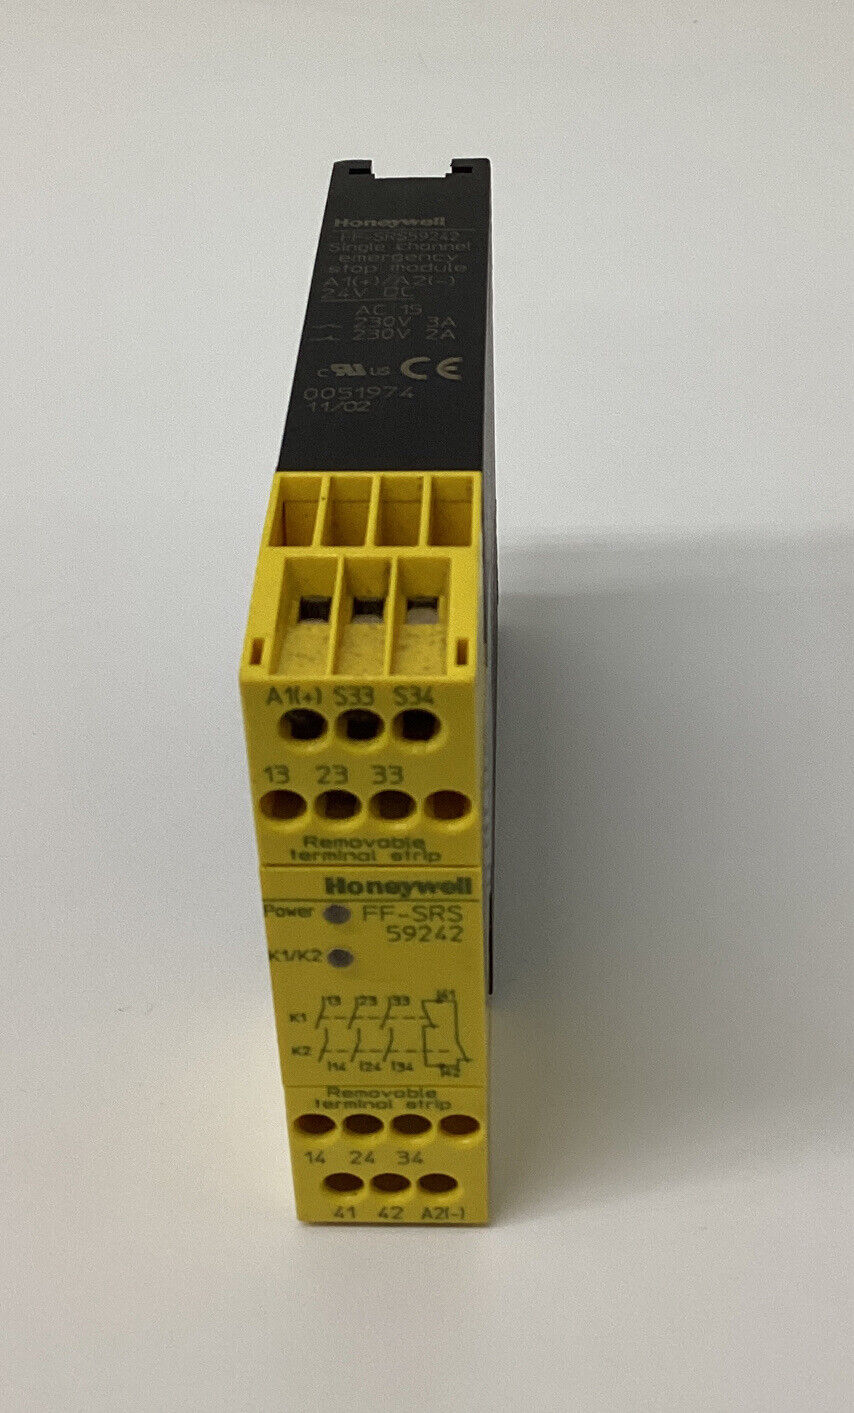 Honeywell  FF-SRS59242  Single Channel Emergency Stop Module  (YE176)